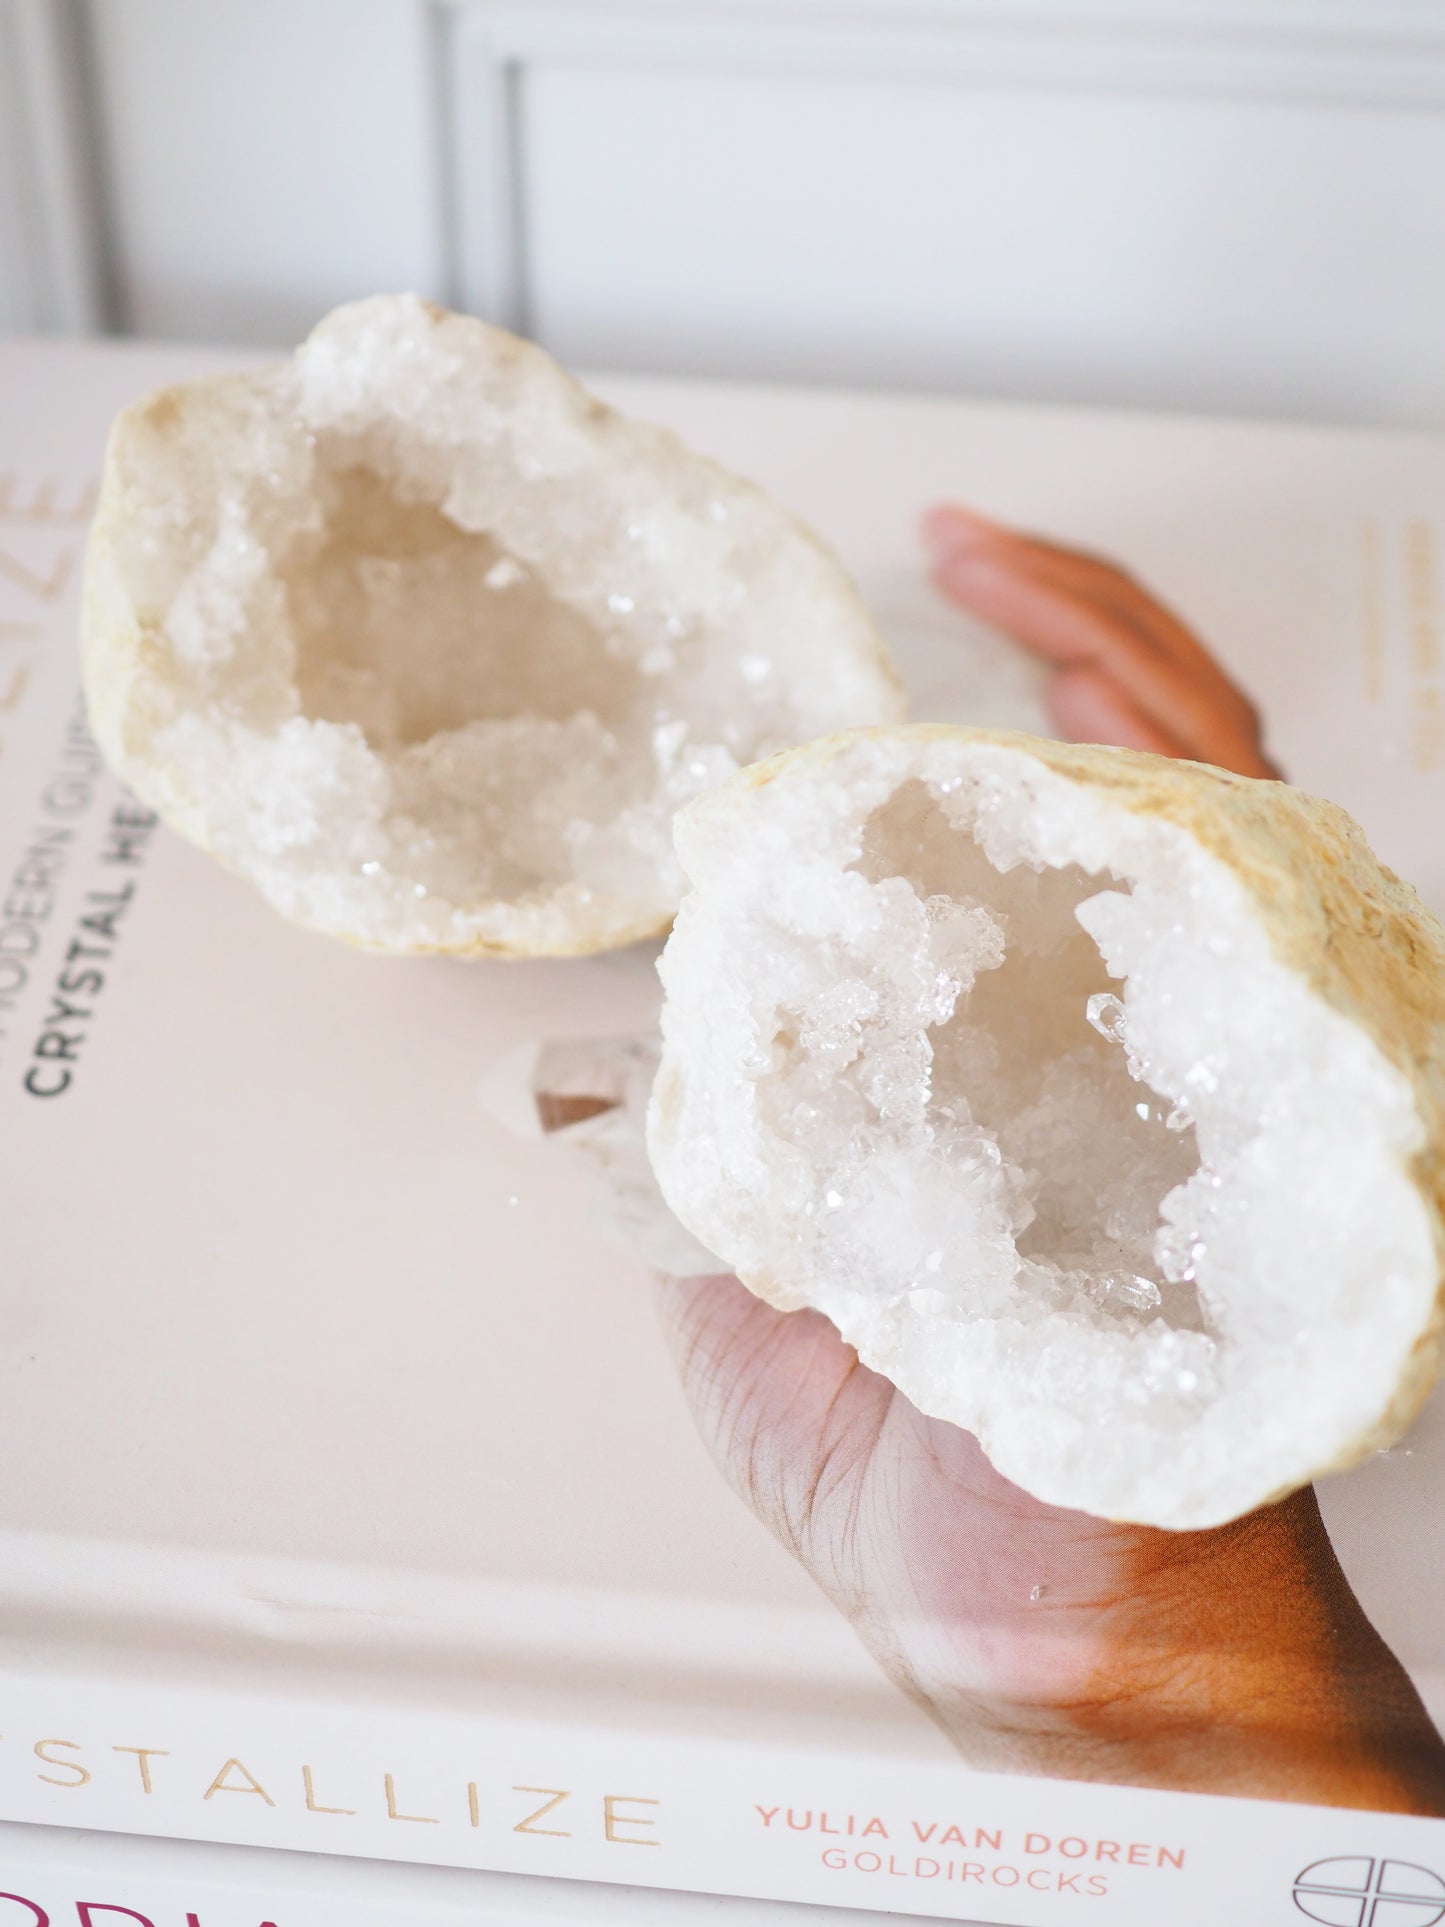 LOVE GEODE . Großes Weißes Quarz  Druzy Geoden Paar ca. 8 cm - aus Marokko